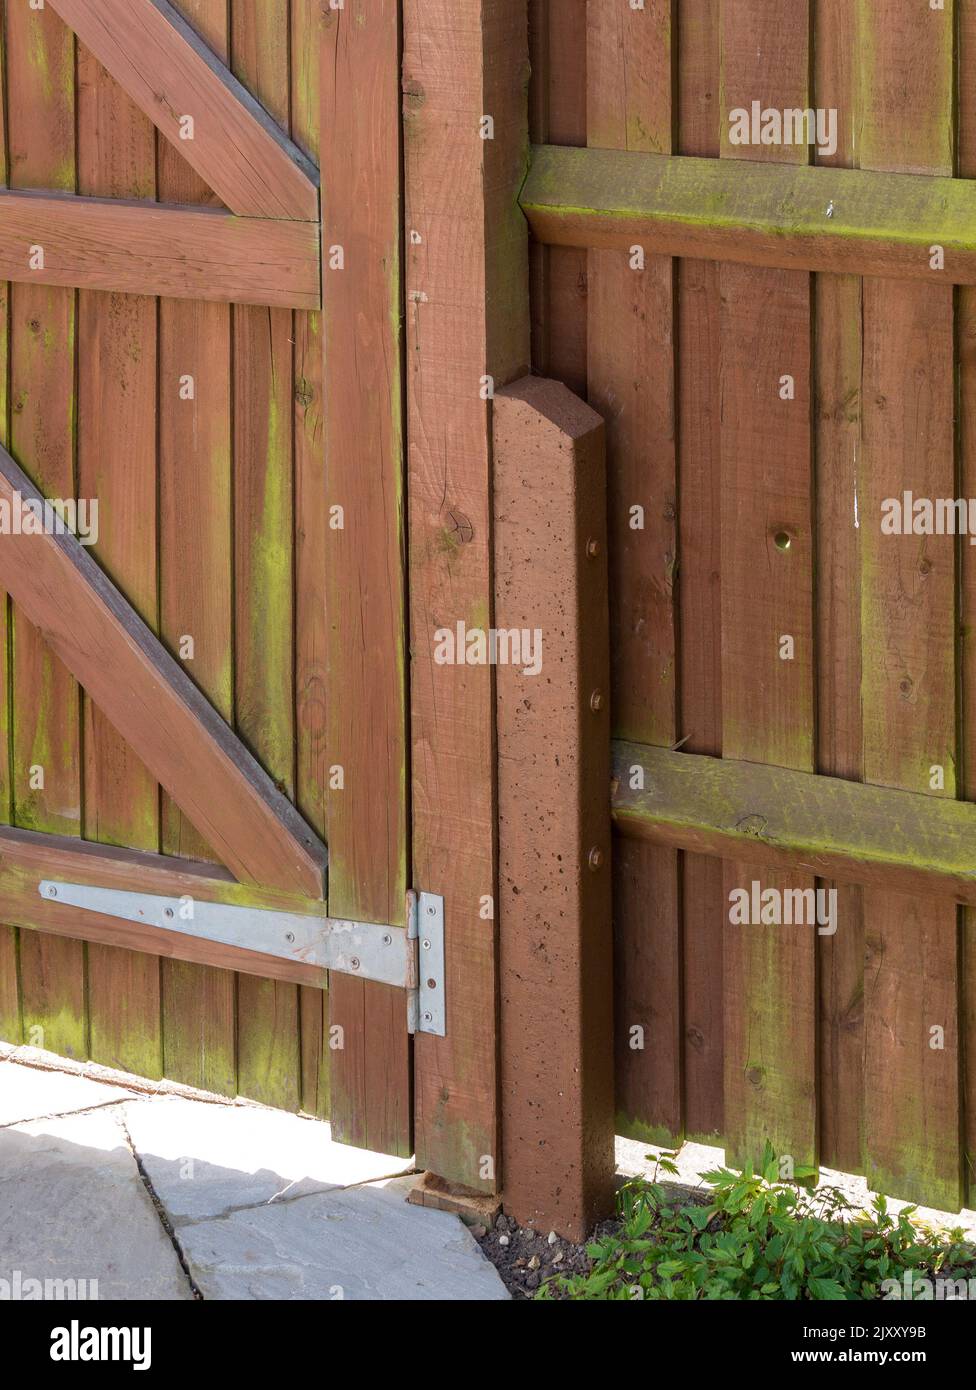 Espuela de poste de valla de 'padrino' de hormigón armado utilizada para reparar el poste de madera de la puerta y apoyar la valla de riel con cubos Foto de stock